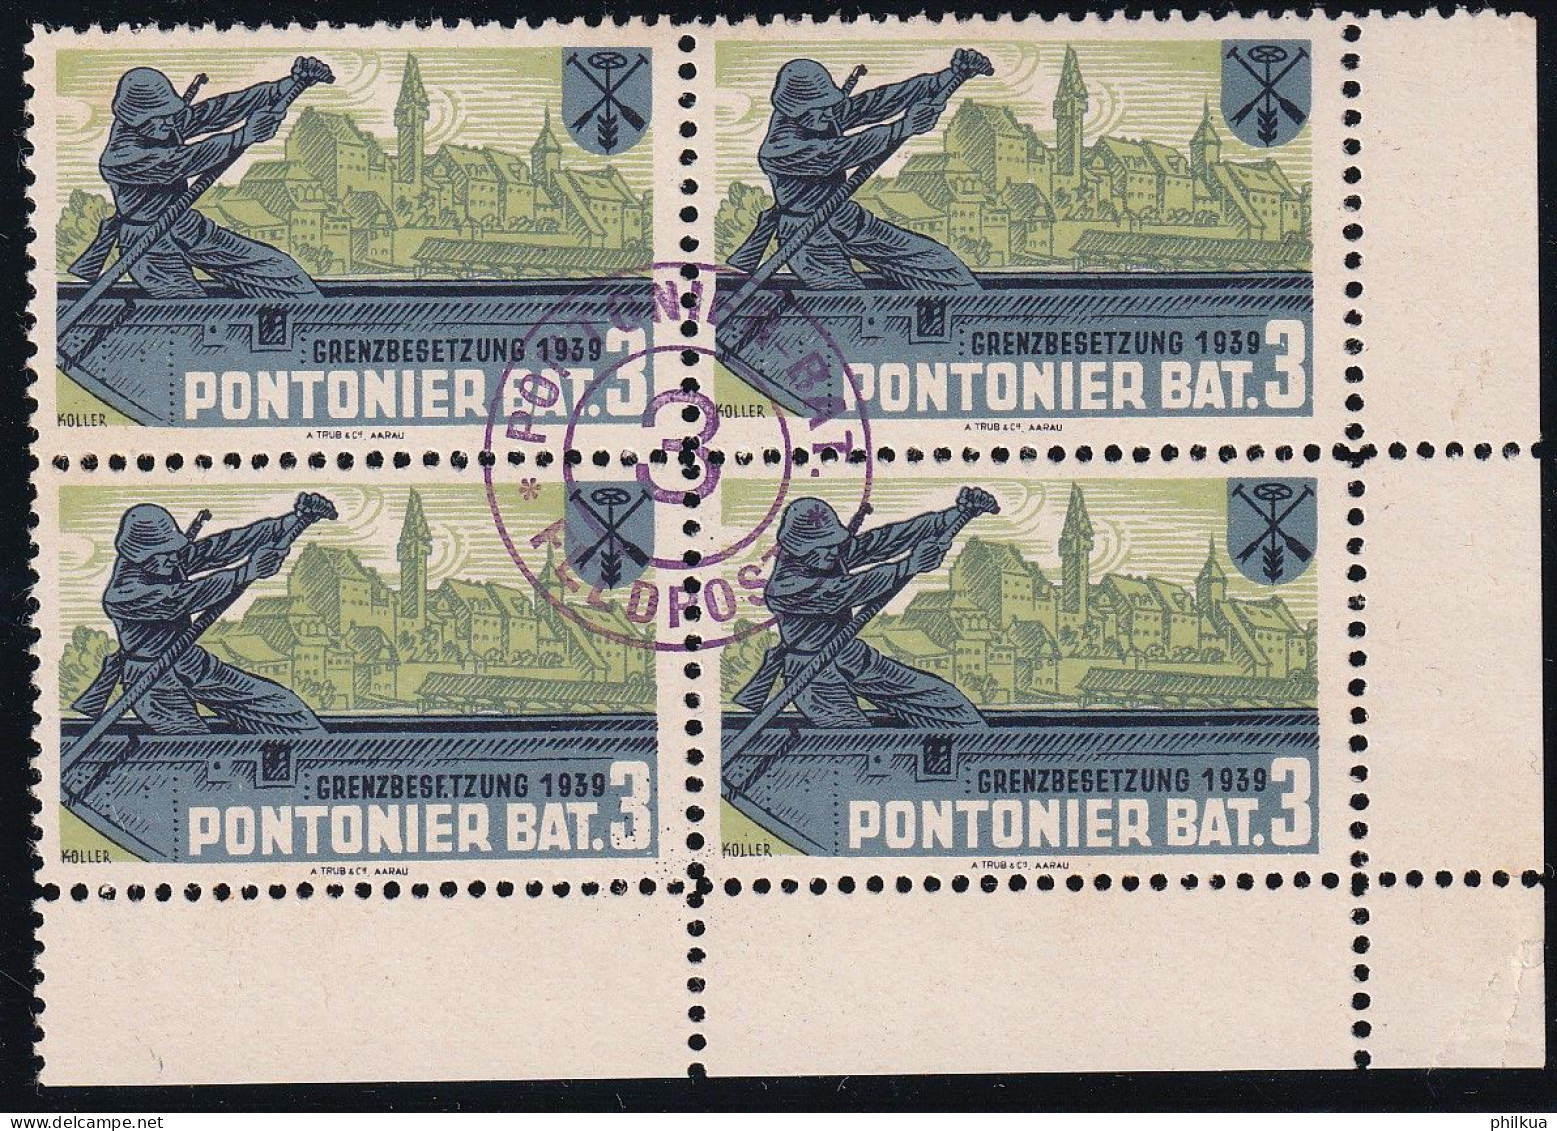 Pontoniere 27 Gezähnter Vierer Block - Pontonier Bat. 3 - Mit Truppemstempel - Postfrisch/**/MNH - Vignetten